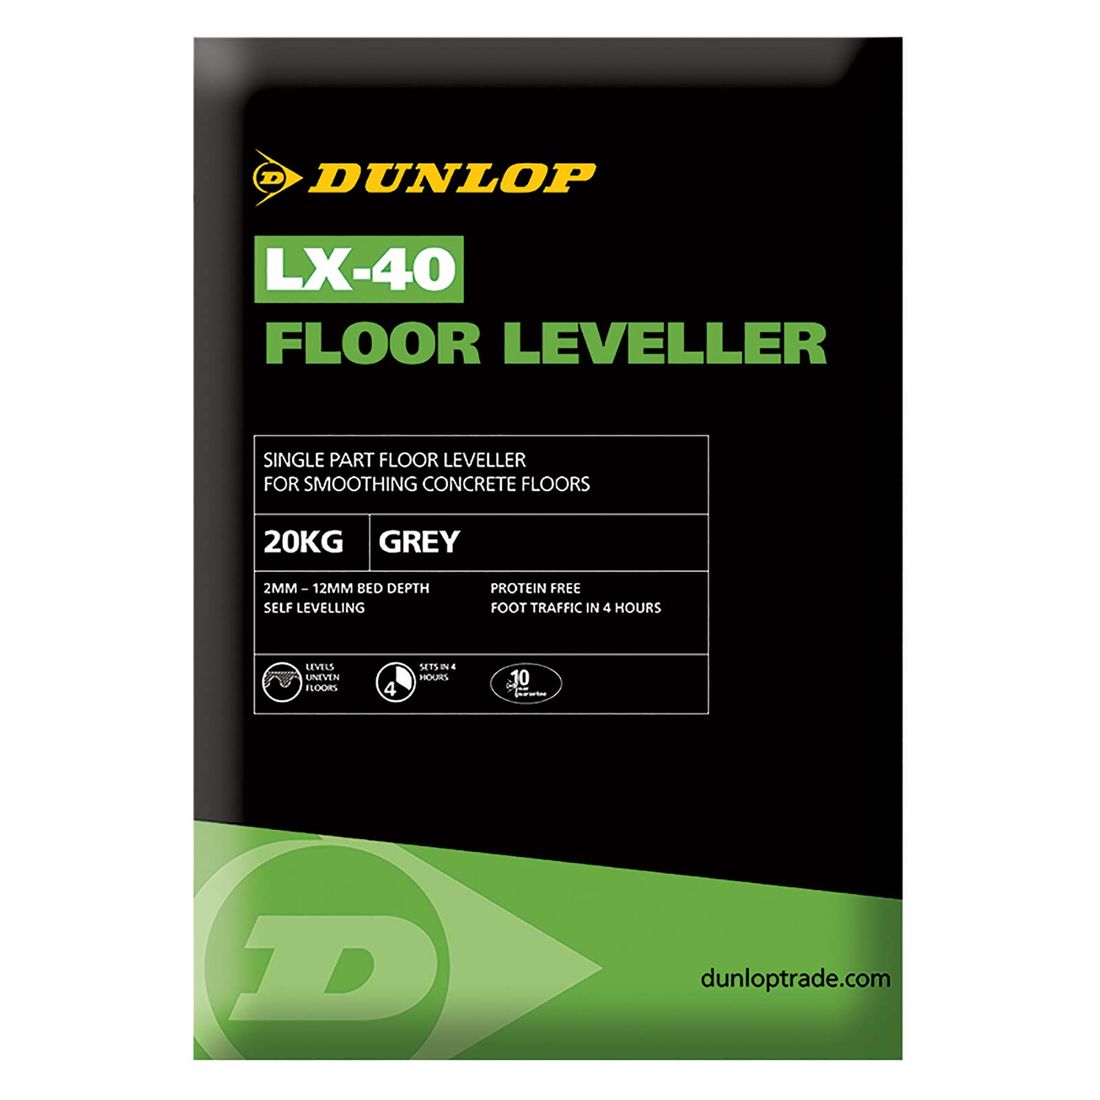 Dunlop Lx-40 Floor Leveller 20Kg